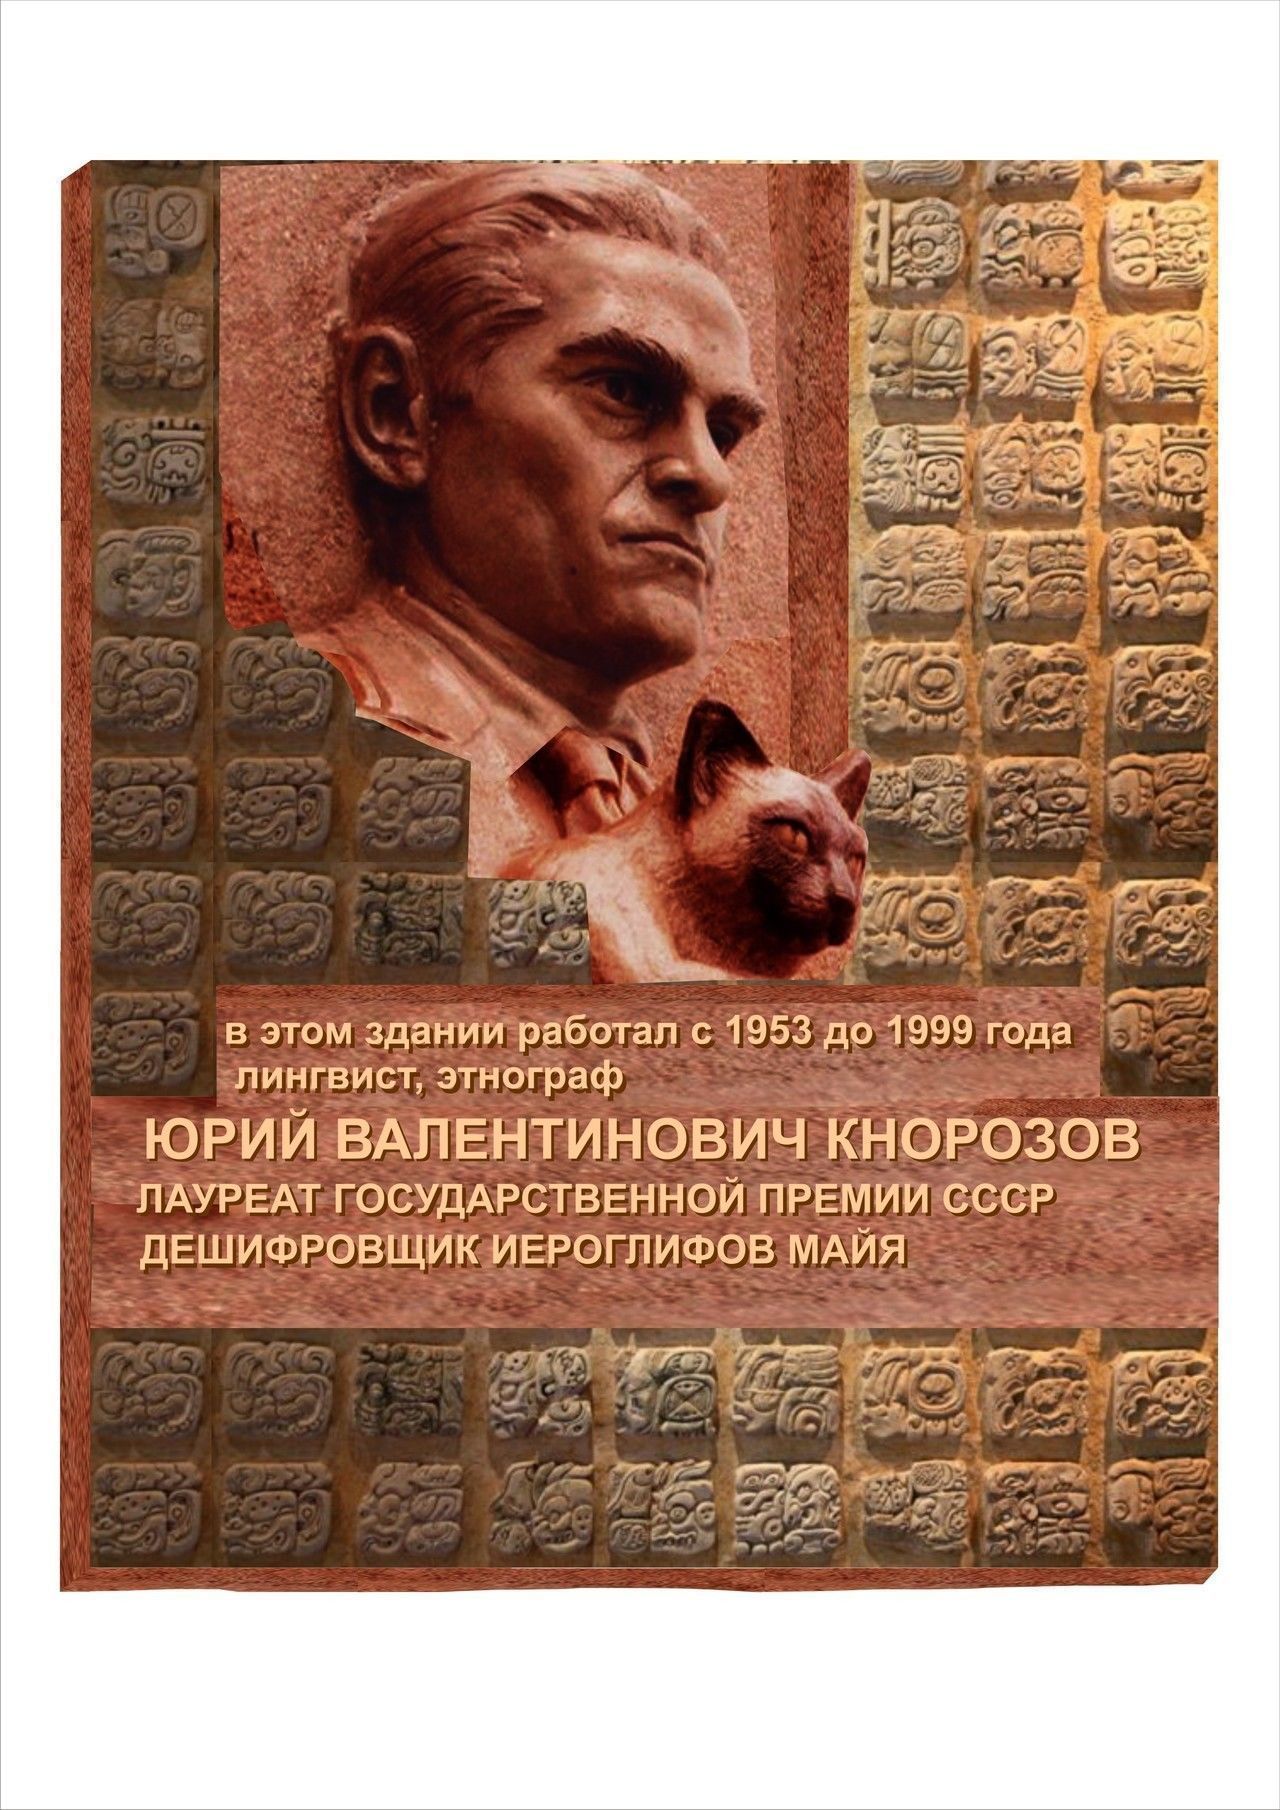 Мемориальную доску ученому Юрию Кнорозову планируется установить к 19 ноября 